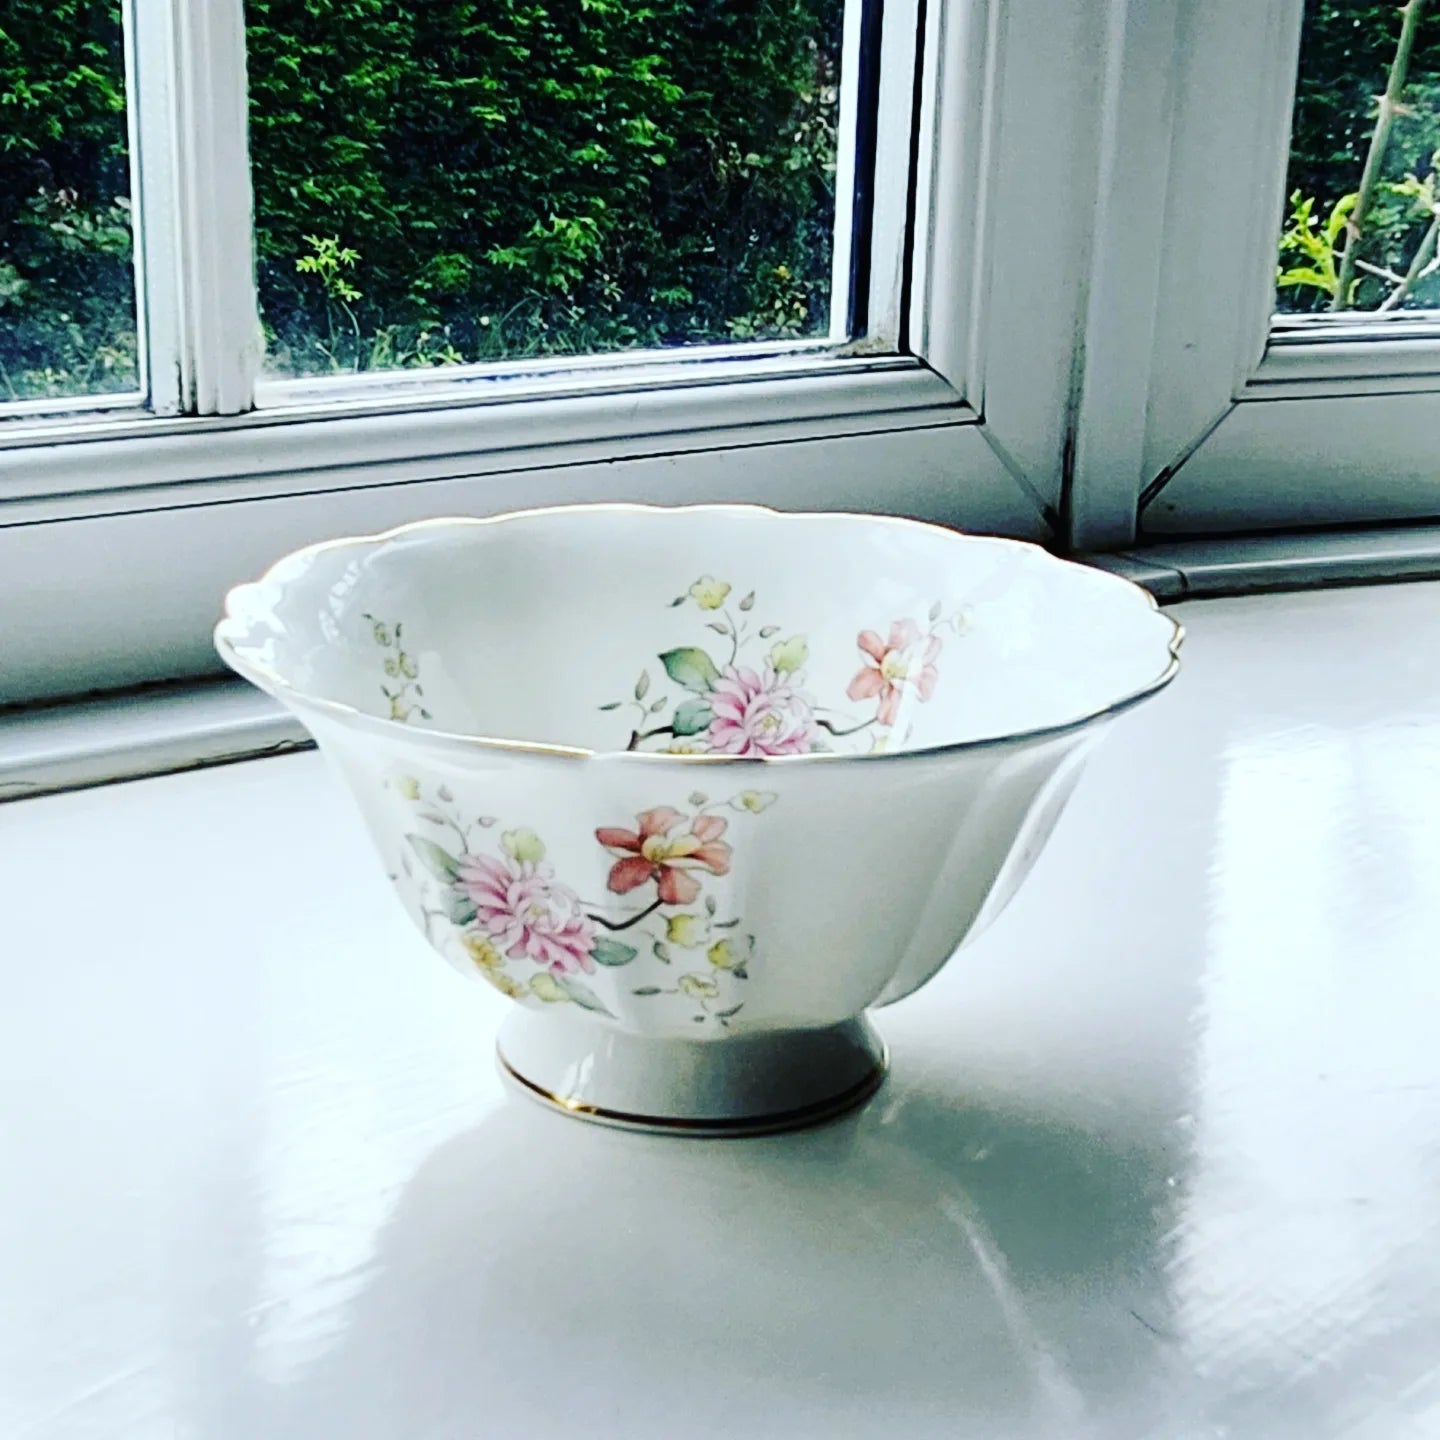 Royal doulton bowl